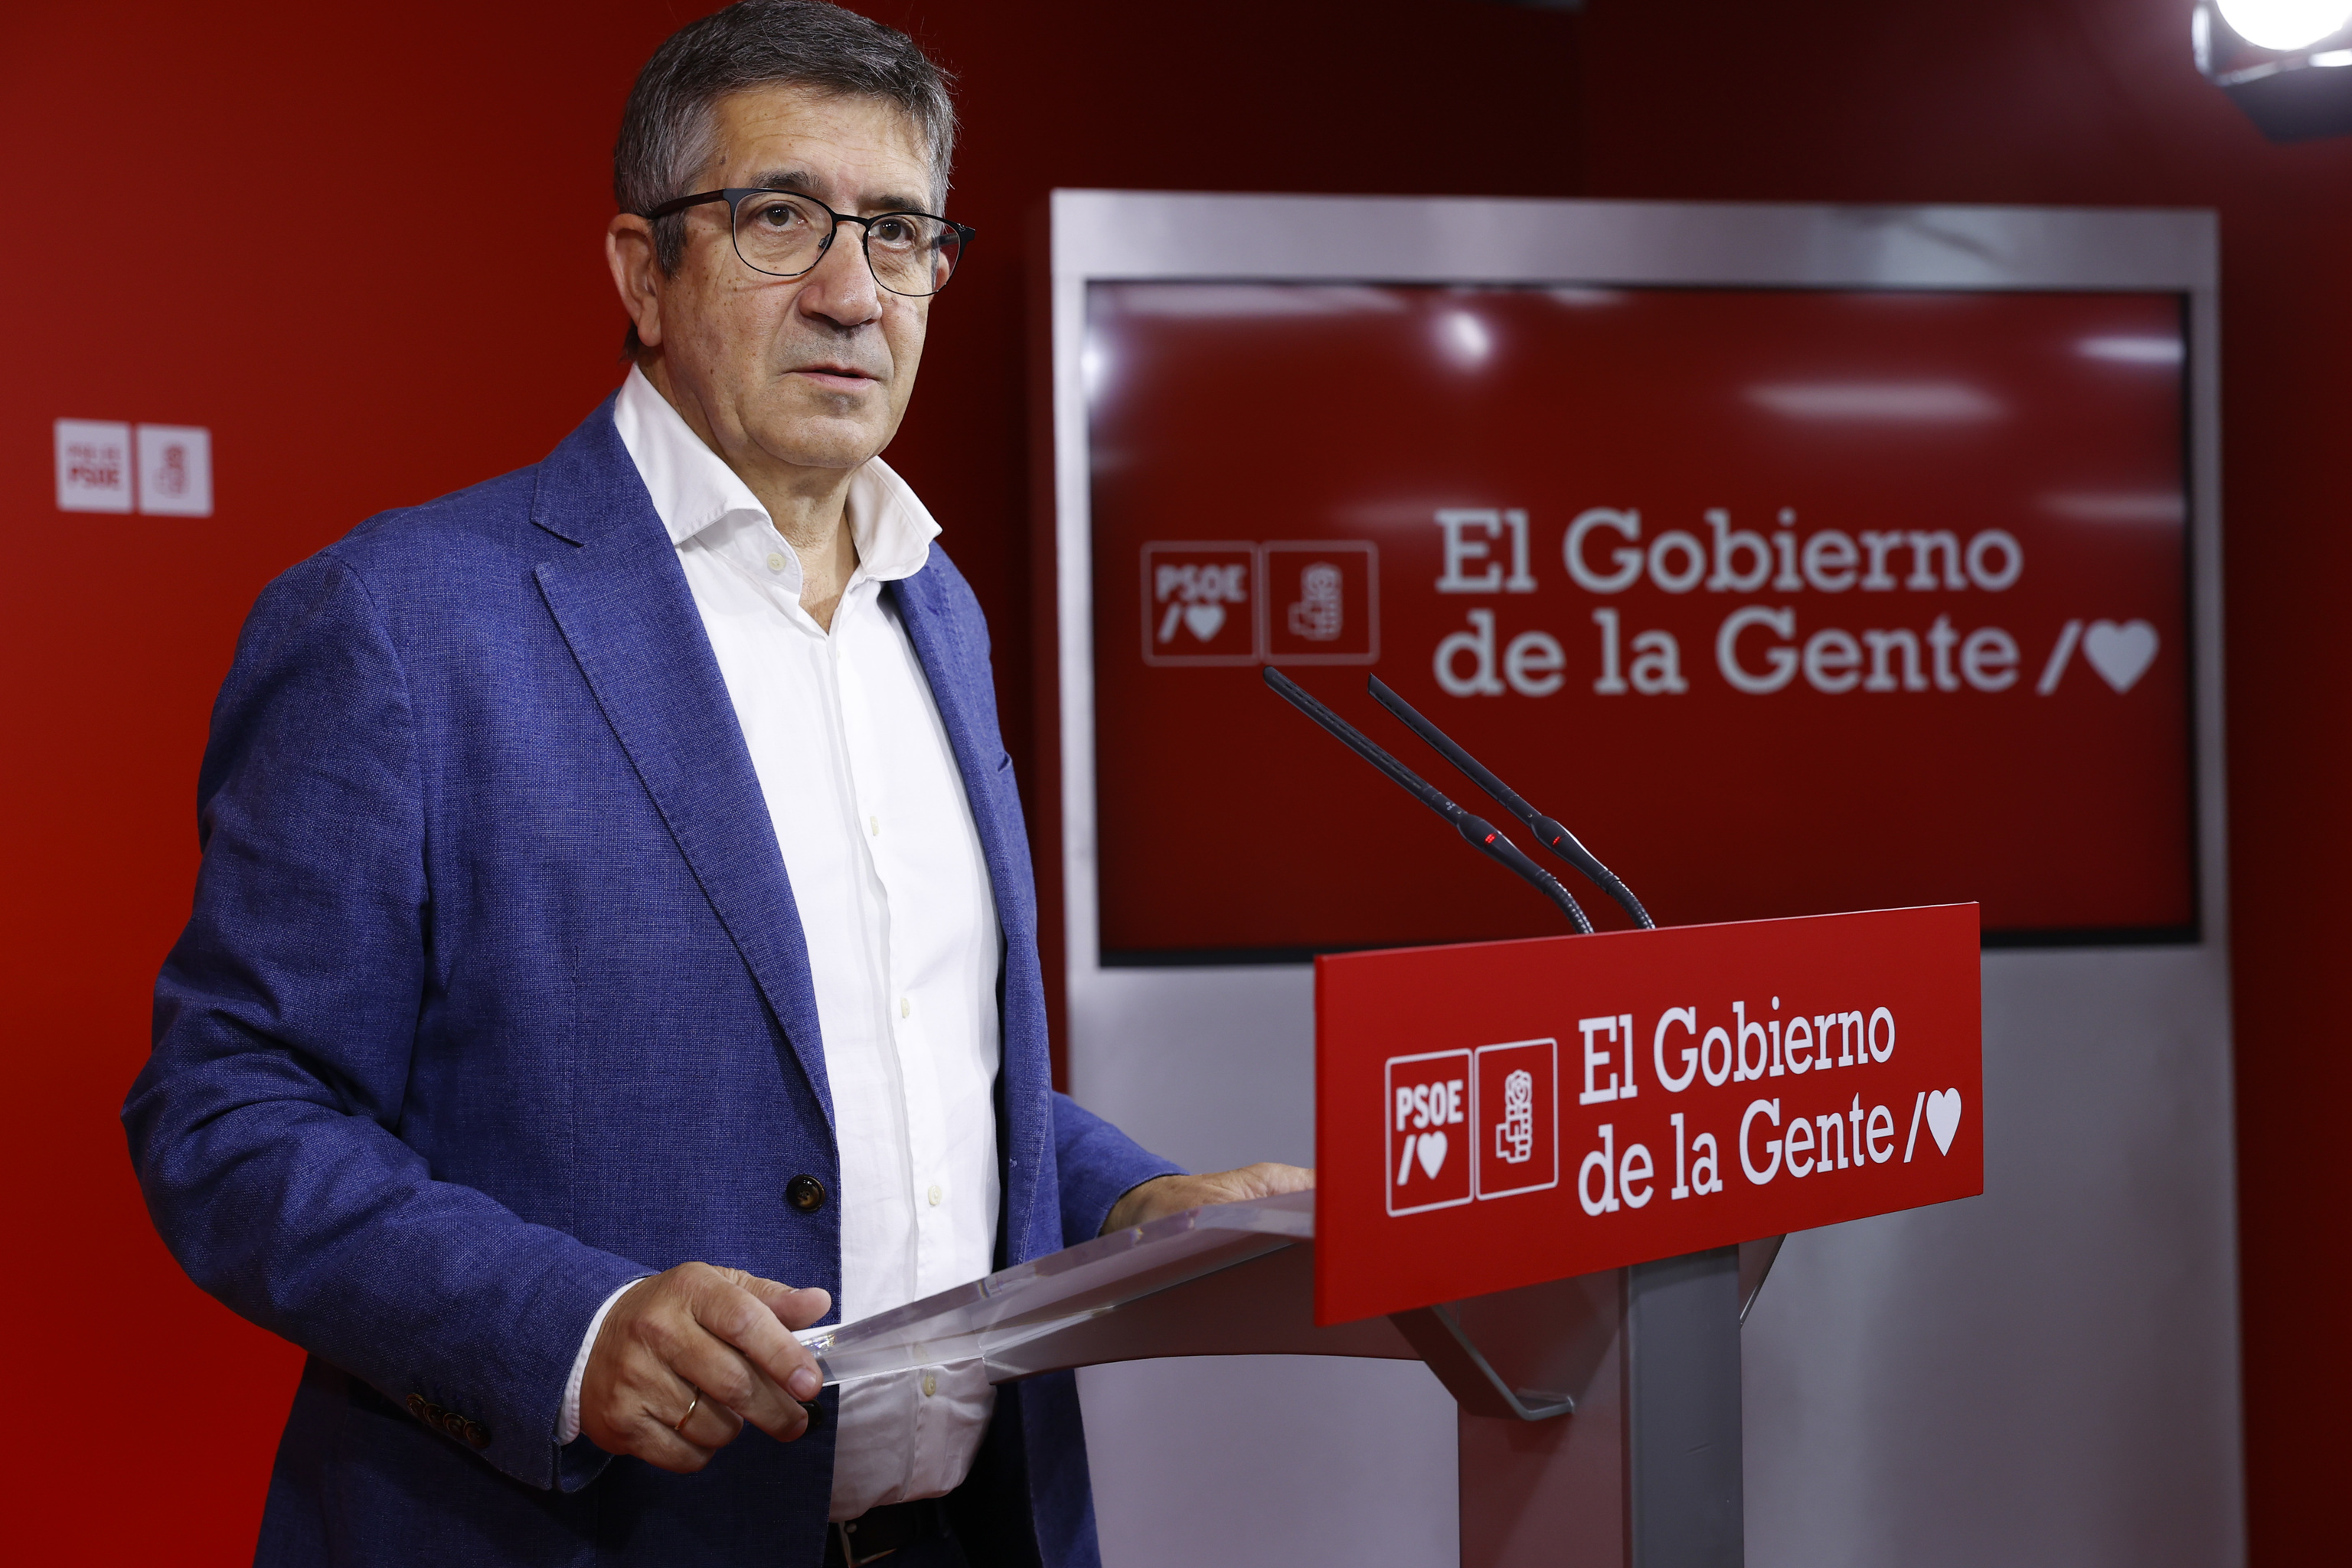 Patxi López, portavoz parlamentario del PSOE, en rueda de prensa.